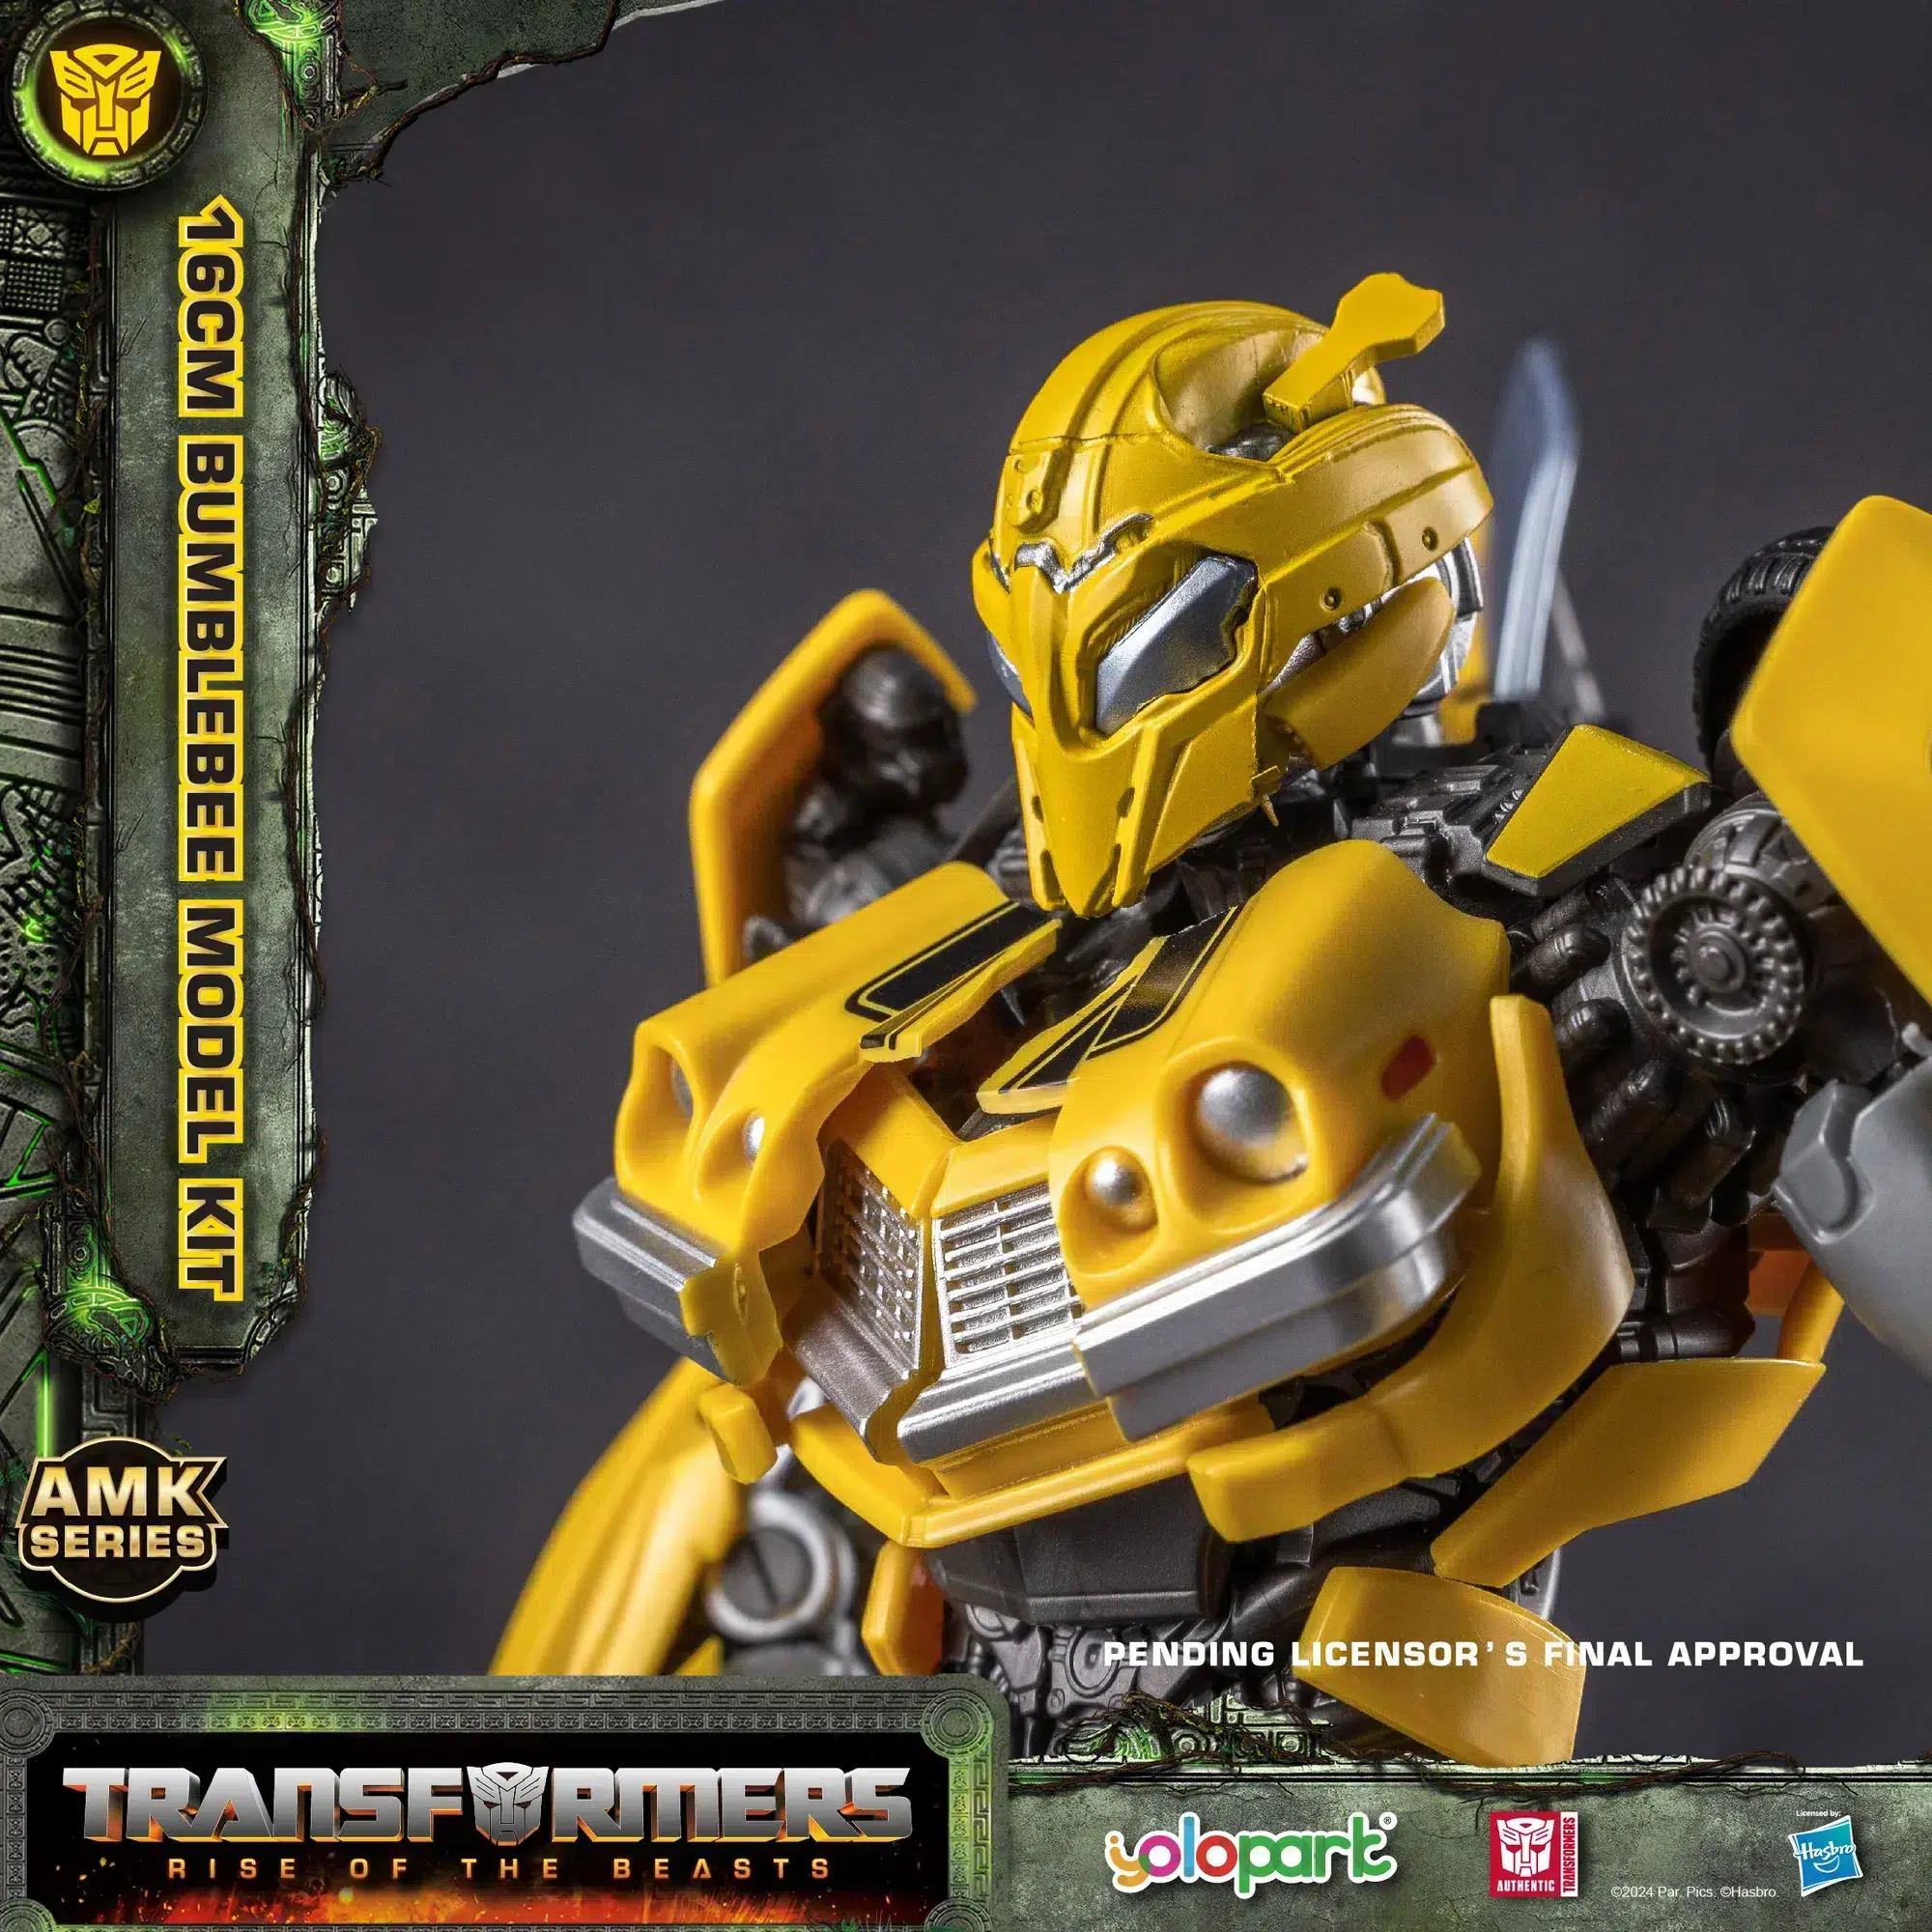 Yolopark Amk Serie Transformers Opkomst van de Beesten Cheetor Modelbouwpakket 5